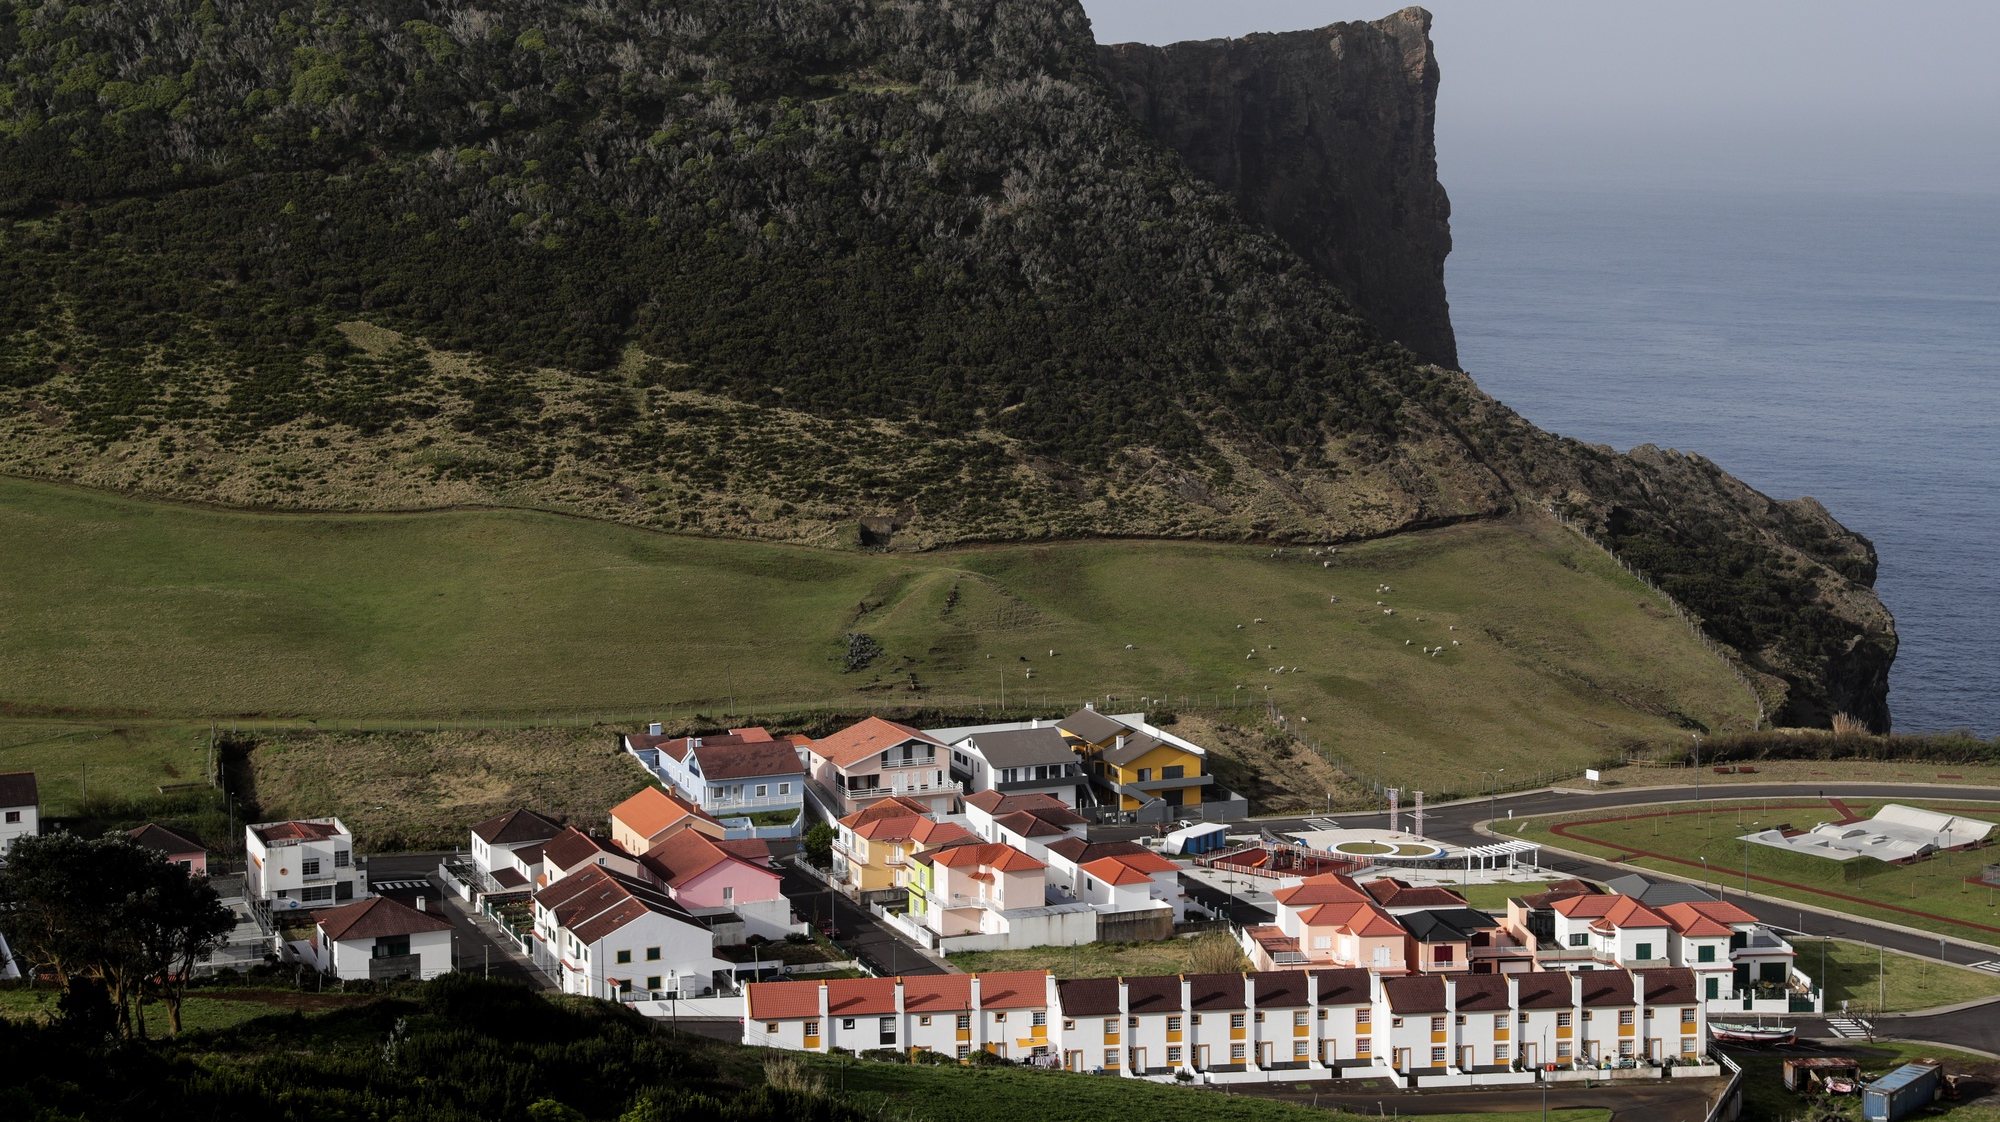 Vista geral de parte da vila de Velas na ilha de São Jorge nos Açores, 29 de março de 2022. TIAGO PETINGA/LUSA